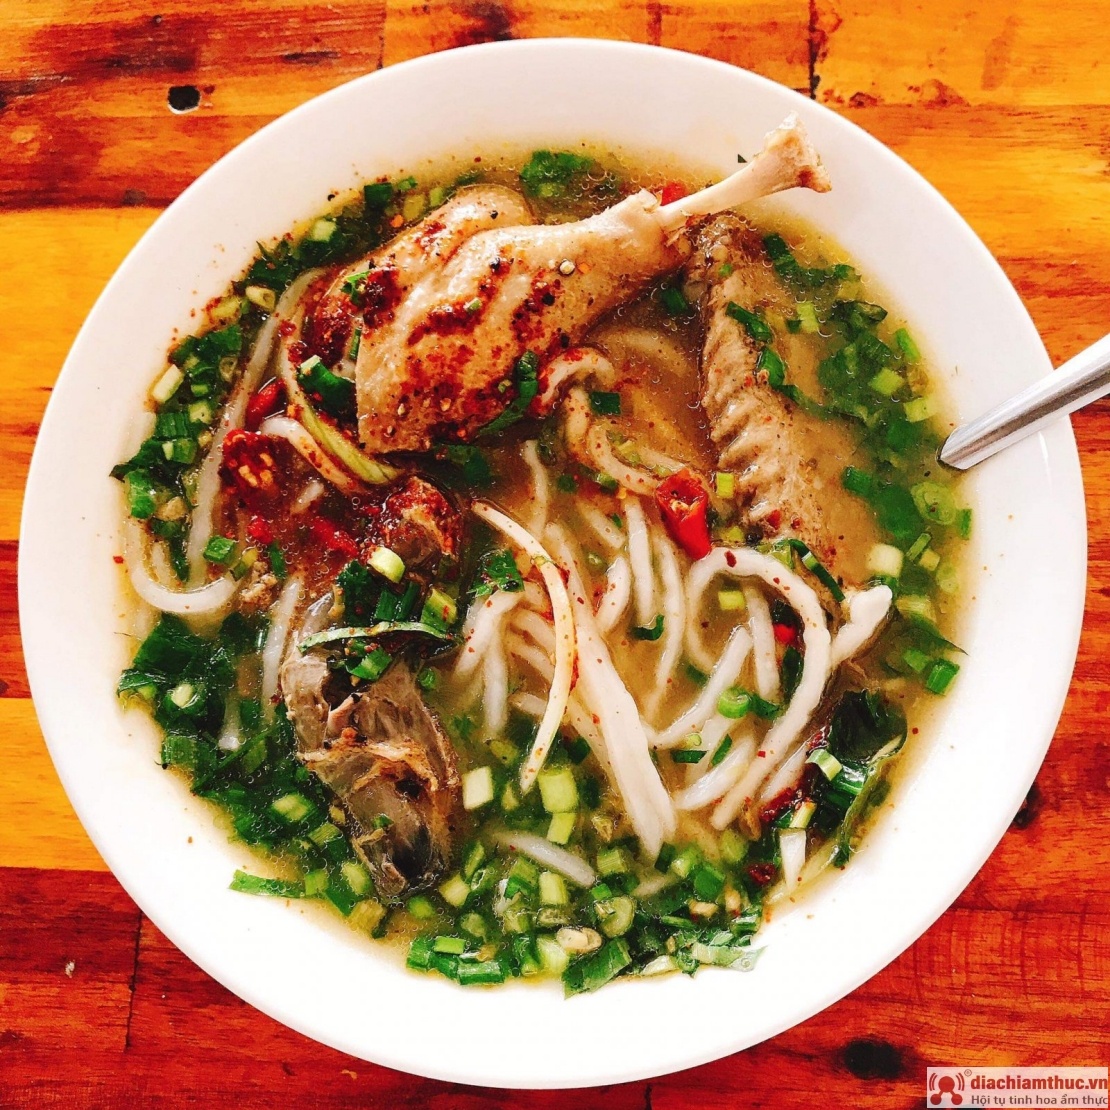 Top restorantet që shesin supën më të shijshme dhe tërheqëse të qullit Quang Binh